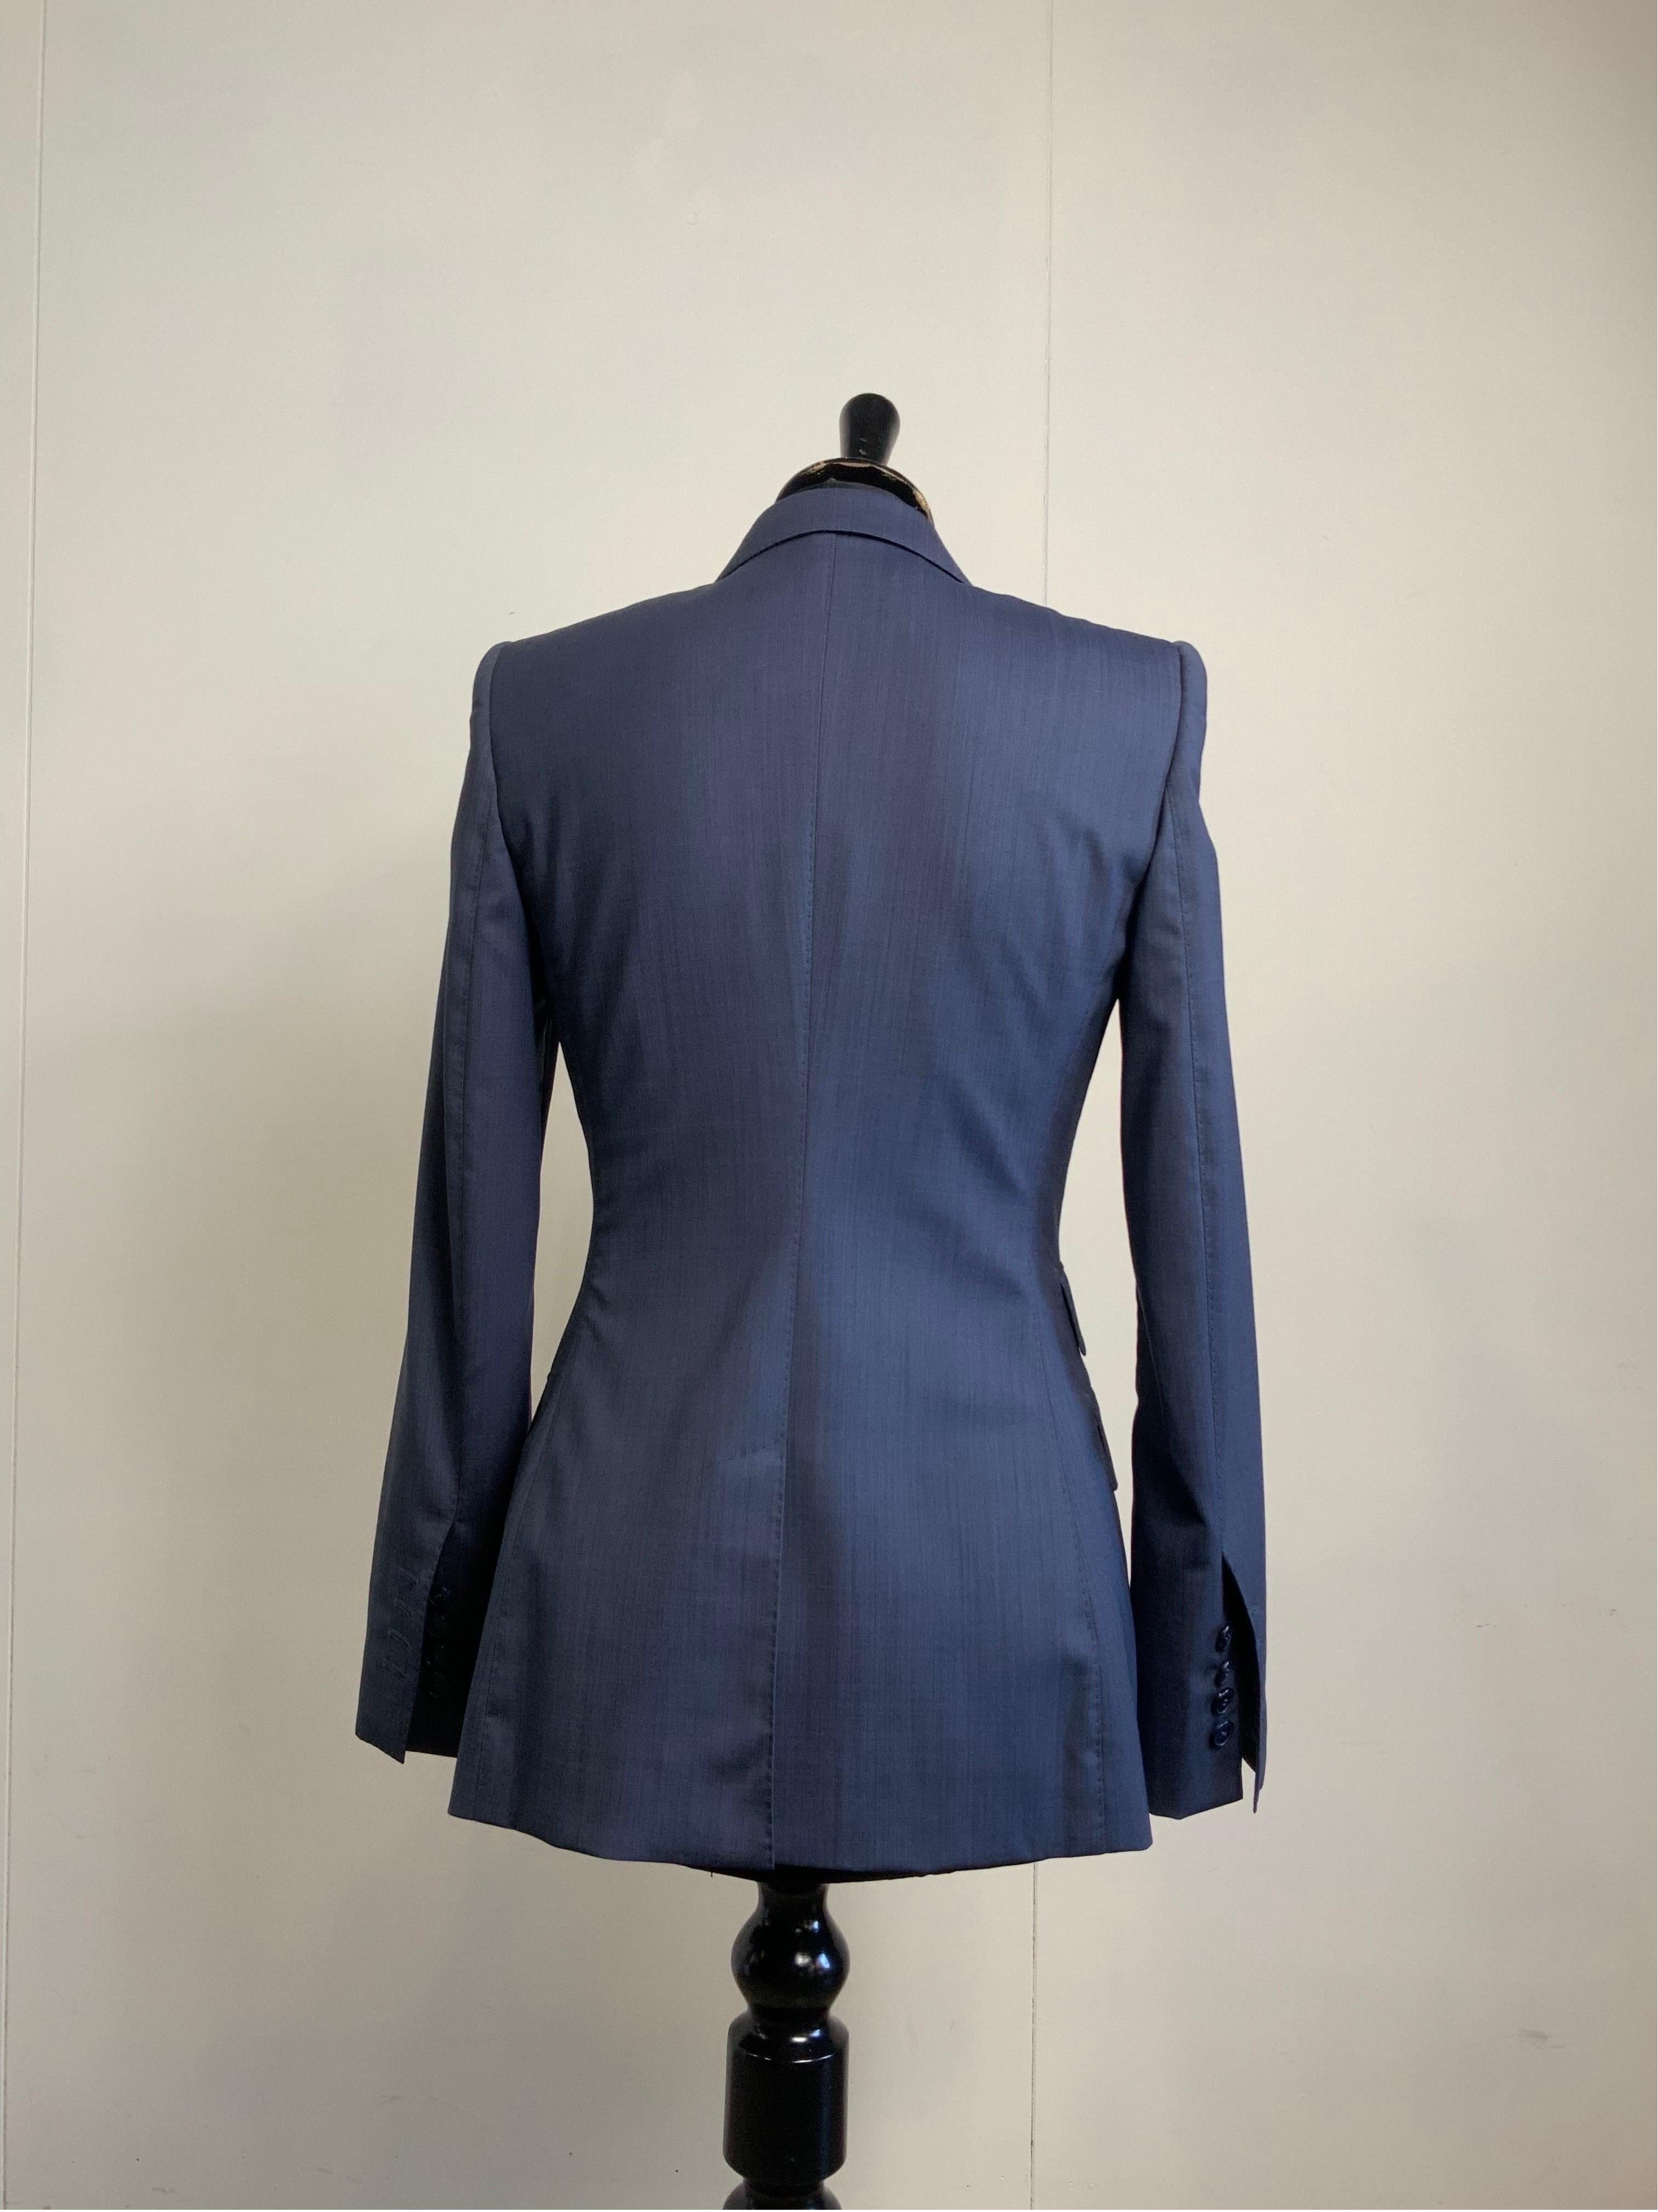 Blaue Jacke + Weste von Dolce und Gabbana. für Damen oder Herren im Angebot